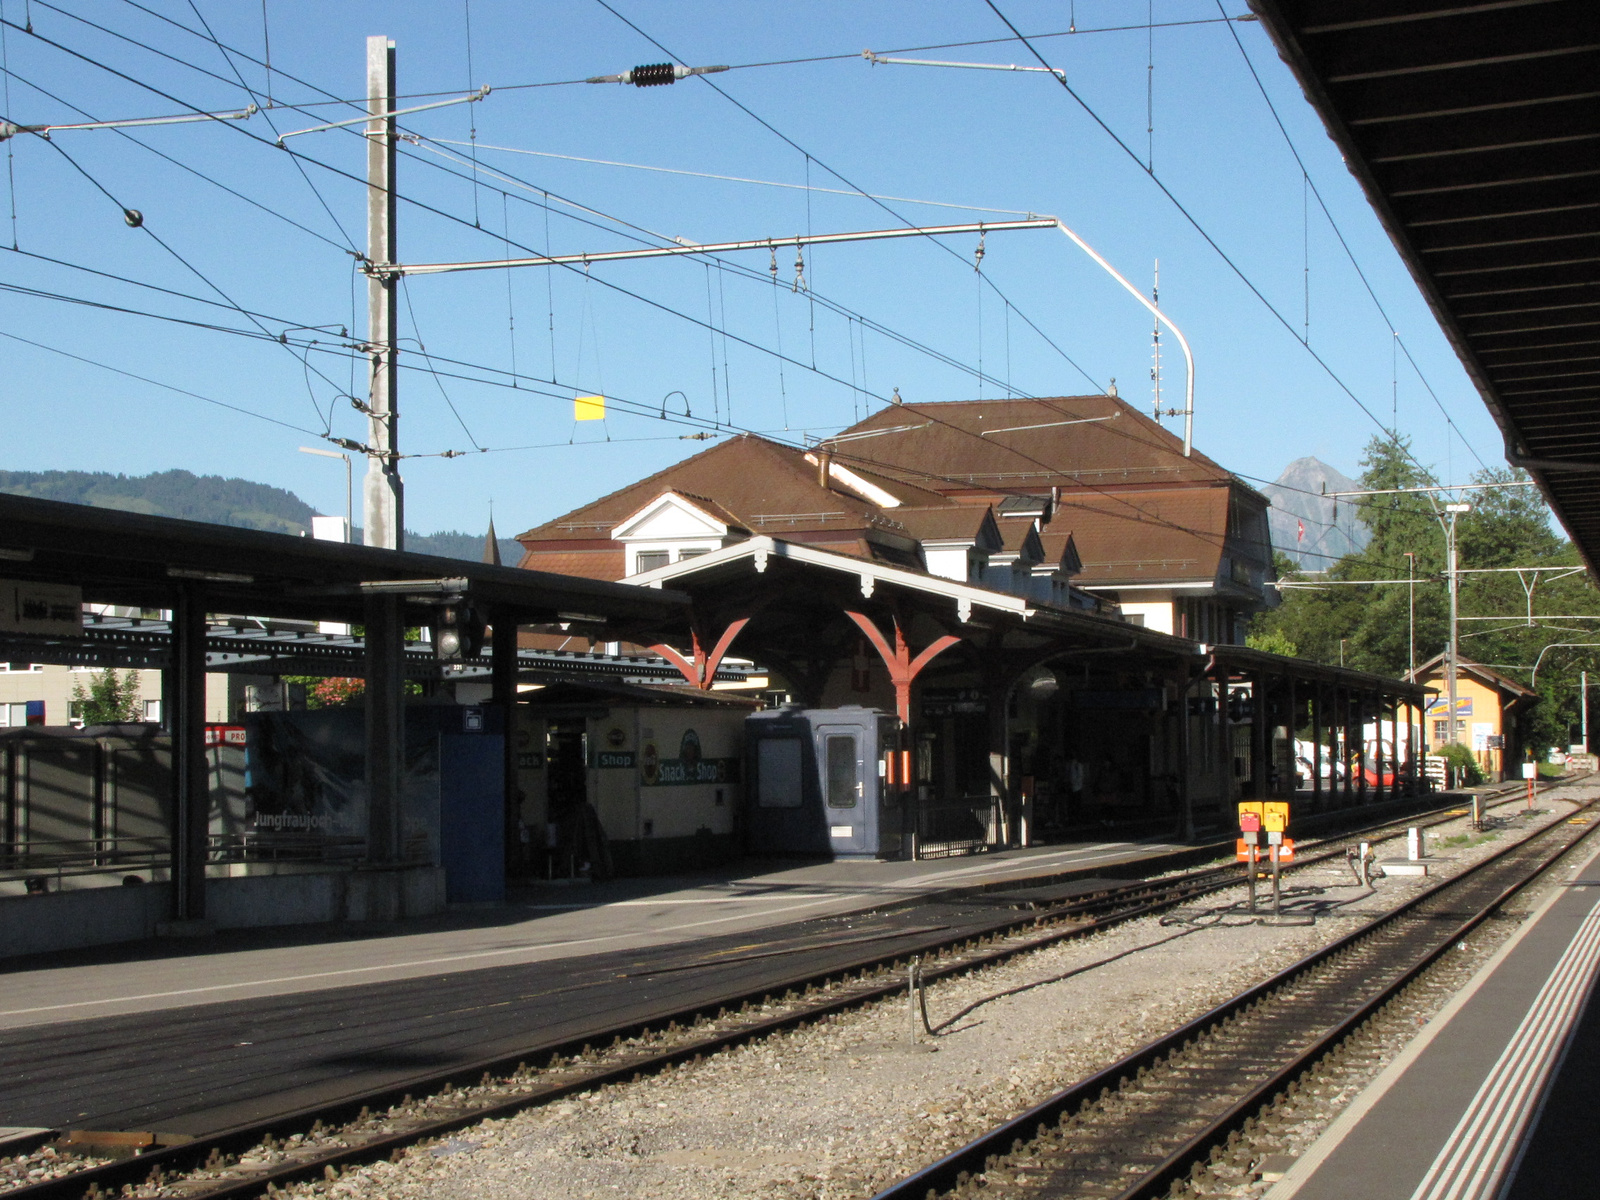 Jungfrau Region, Interlaken, a vasútállomás, SzG3